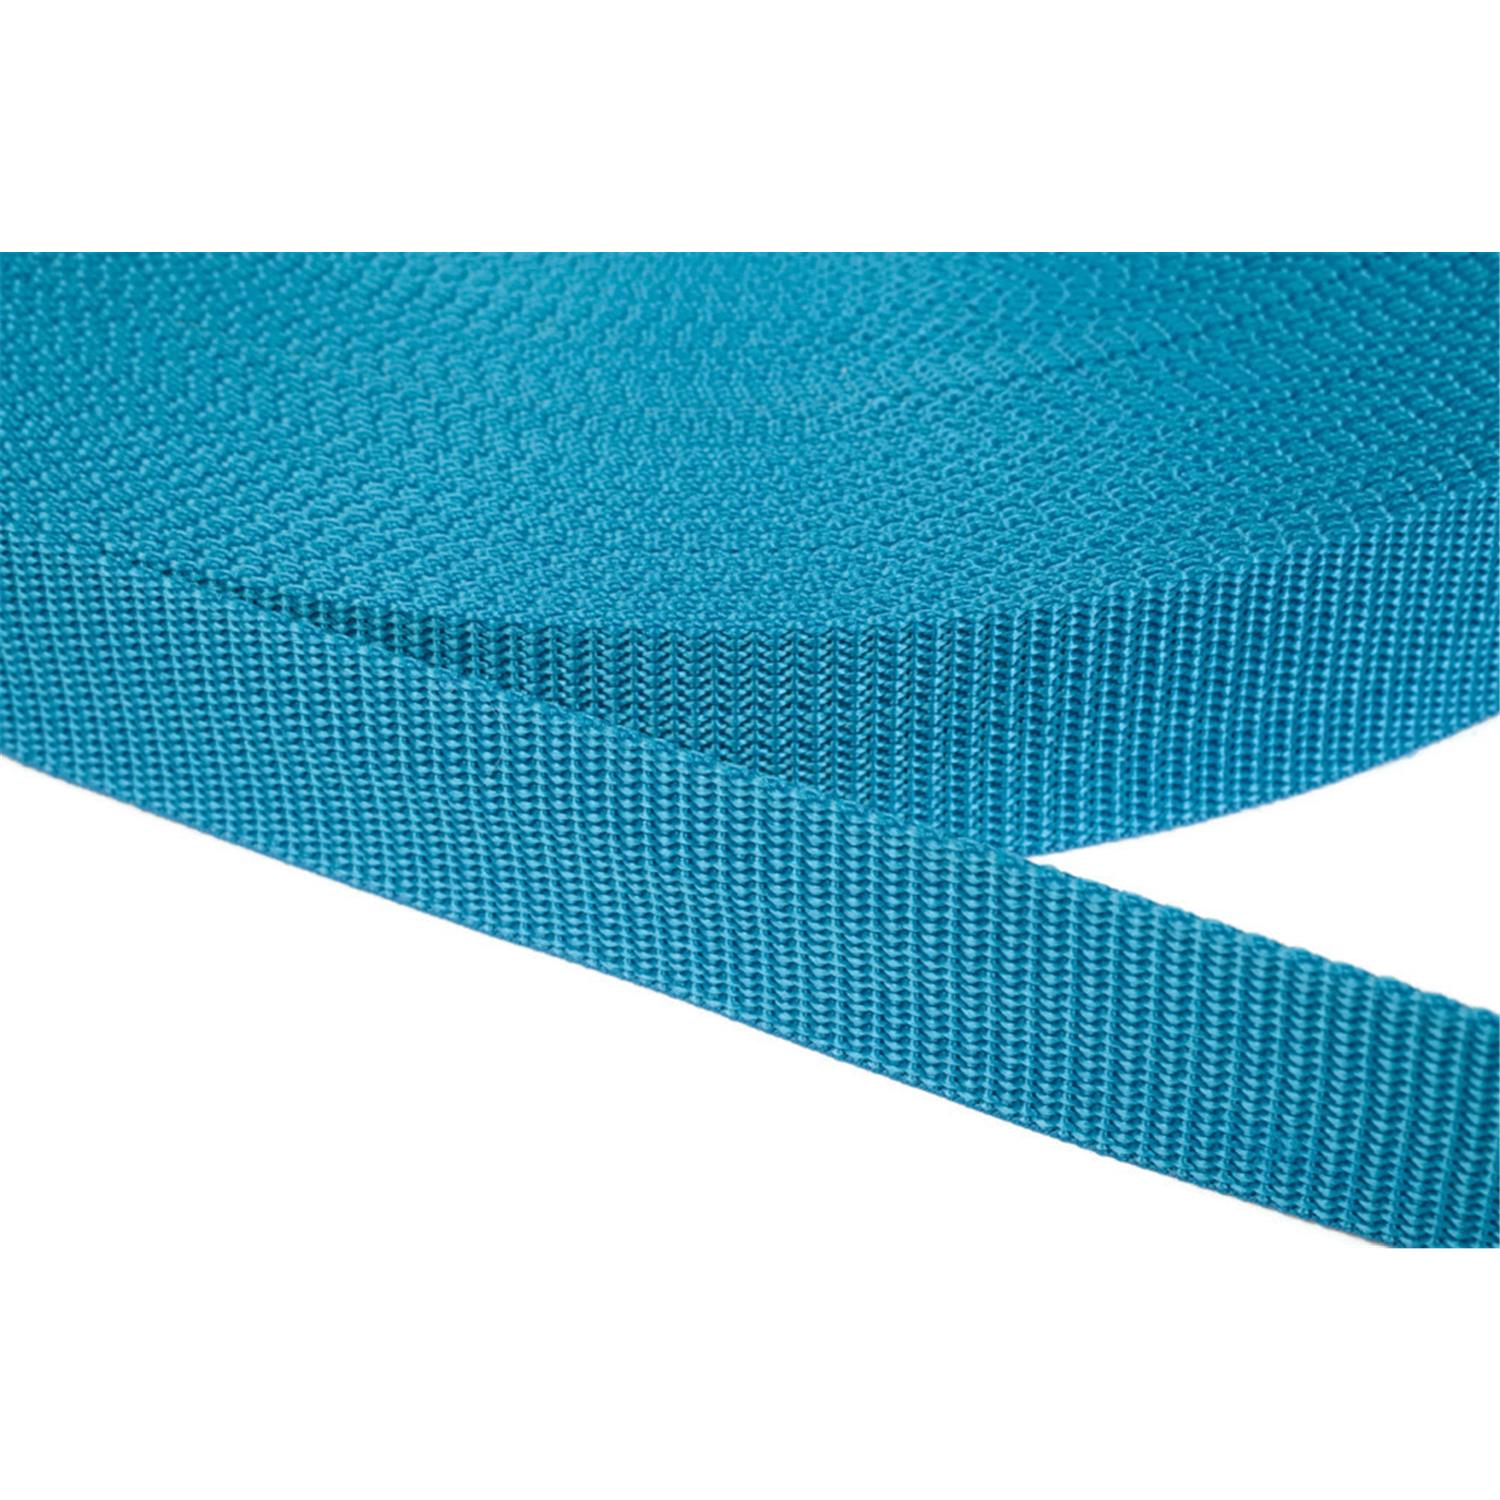 Gurtband 20mm breit aus Polypropylen in 41 Farben 29 - türkis 12 Meter